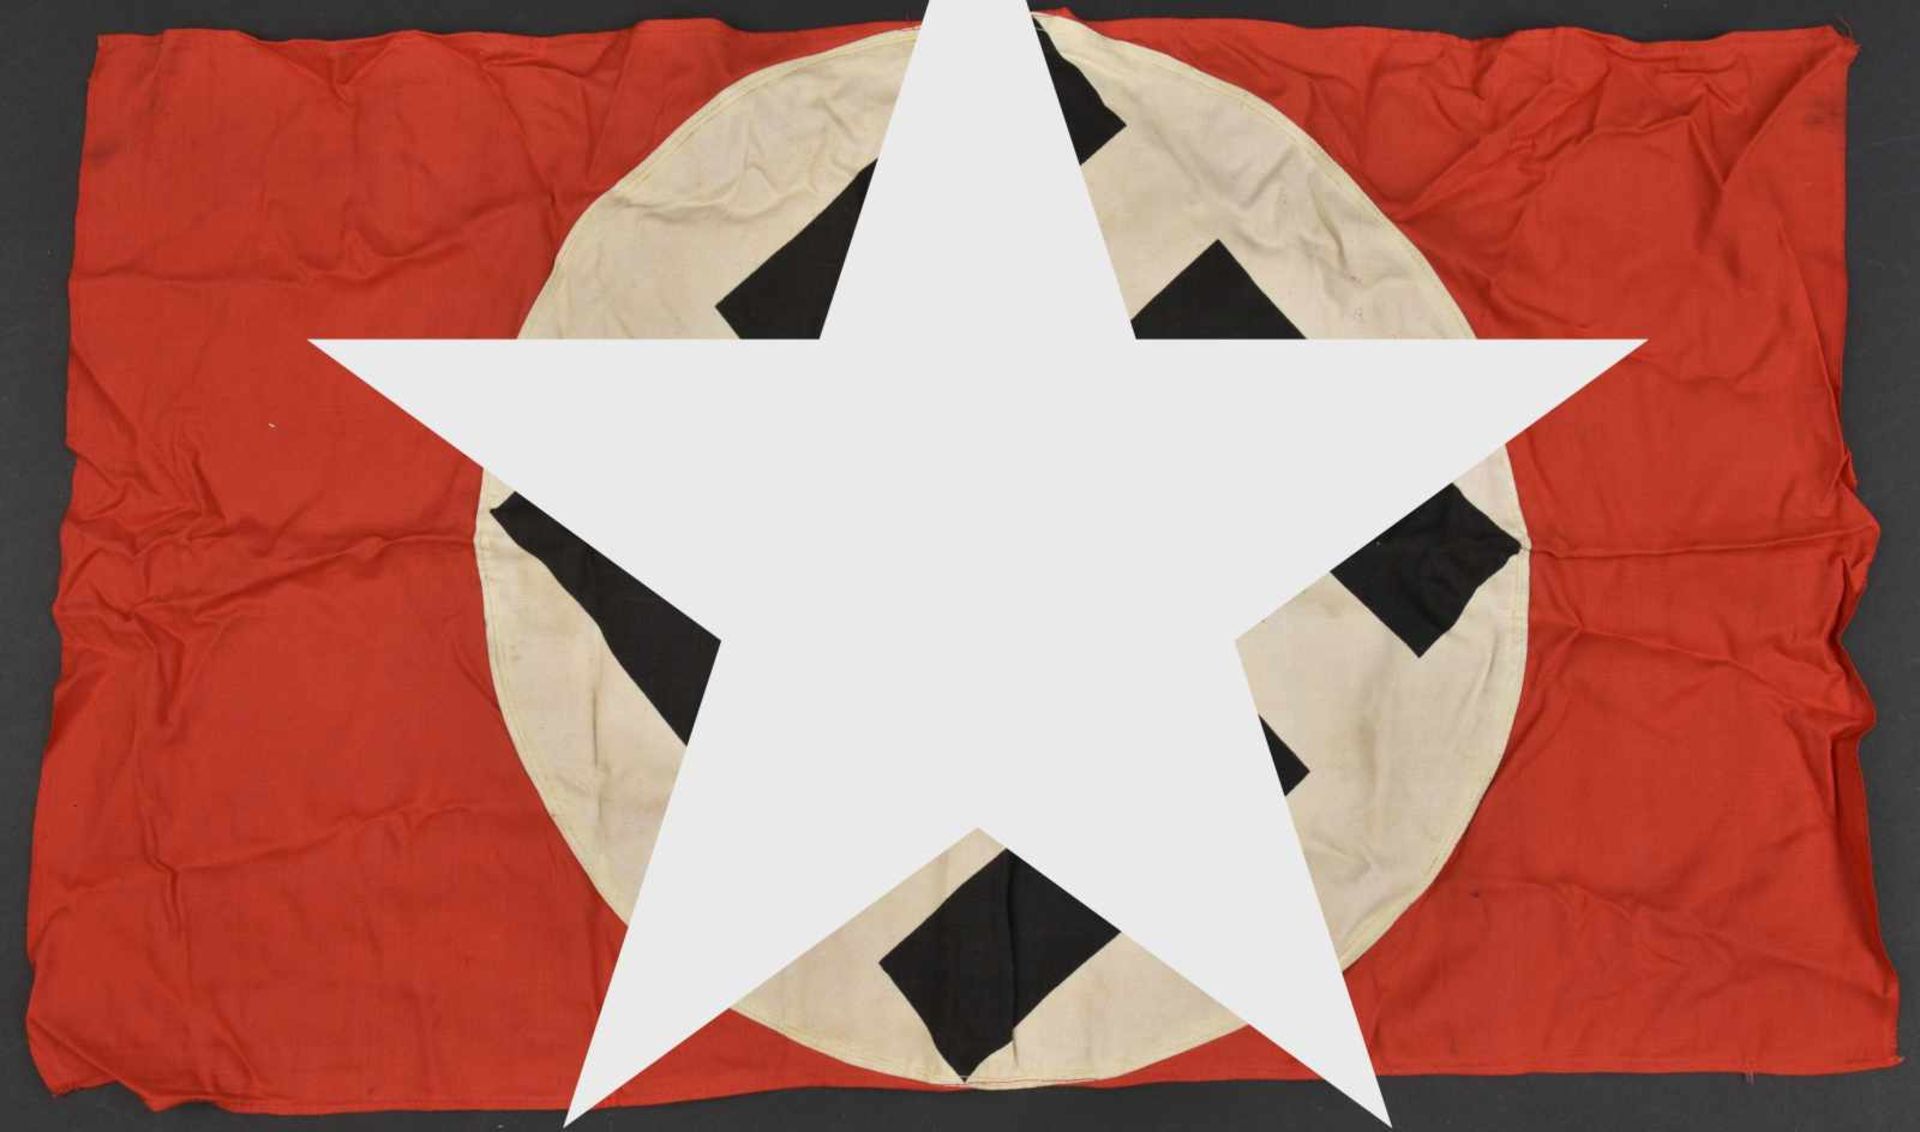 Drapeau allemand En tissu coton rouge, insigne national imprimé, rond blanc rapporté. L'authenticité